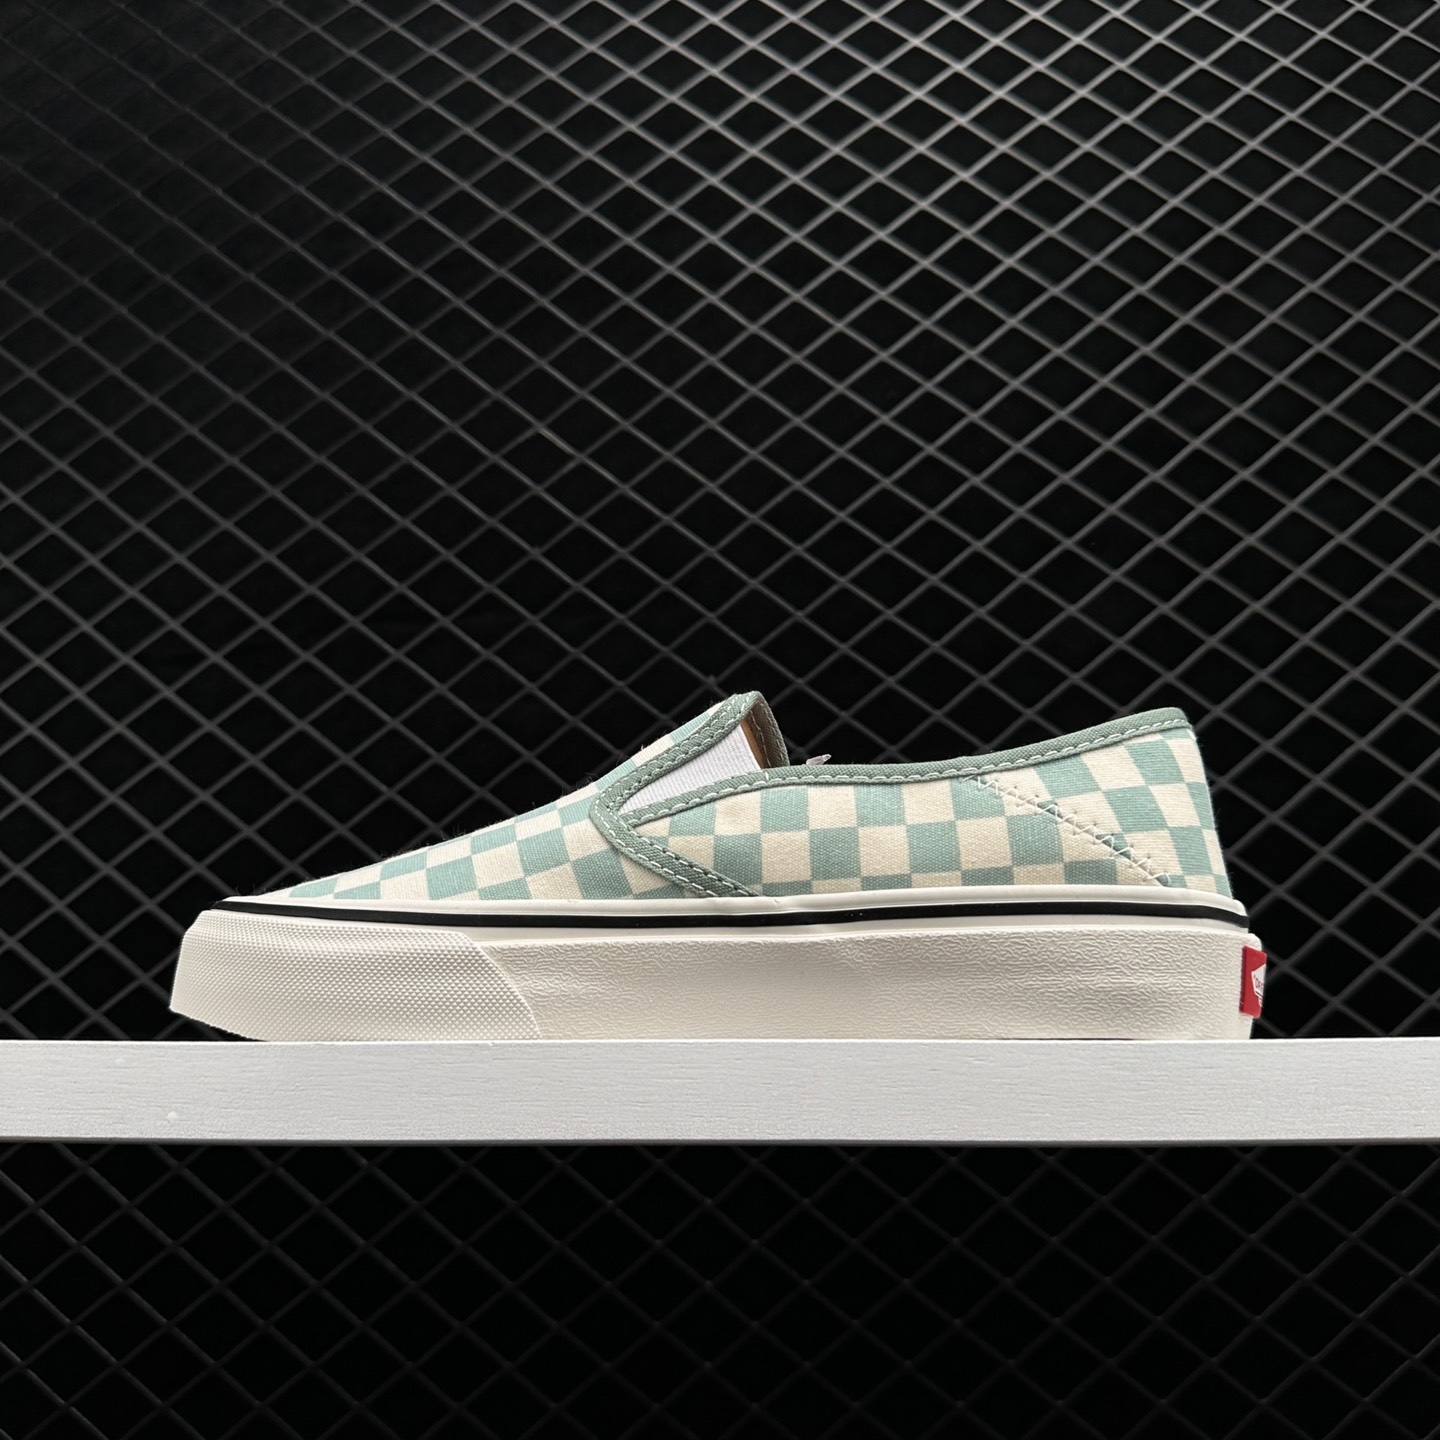 Vans Slip-on Low Tops: Unisex Green White Casual Skateboarding Shoes